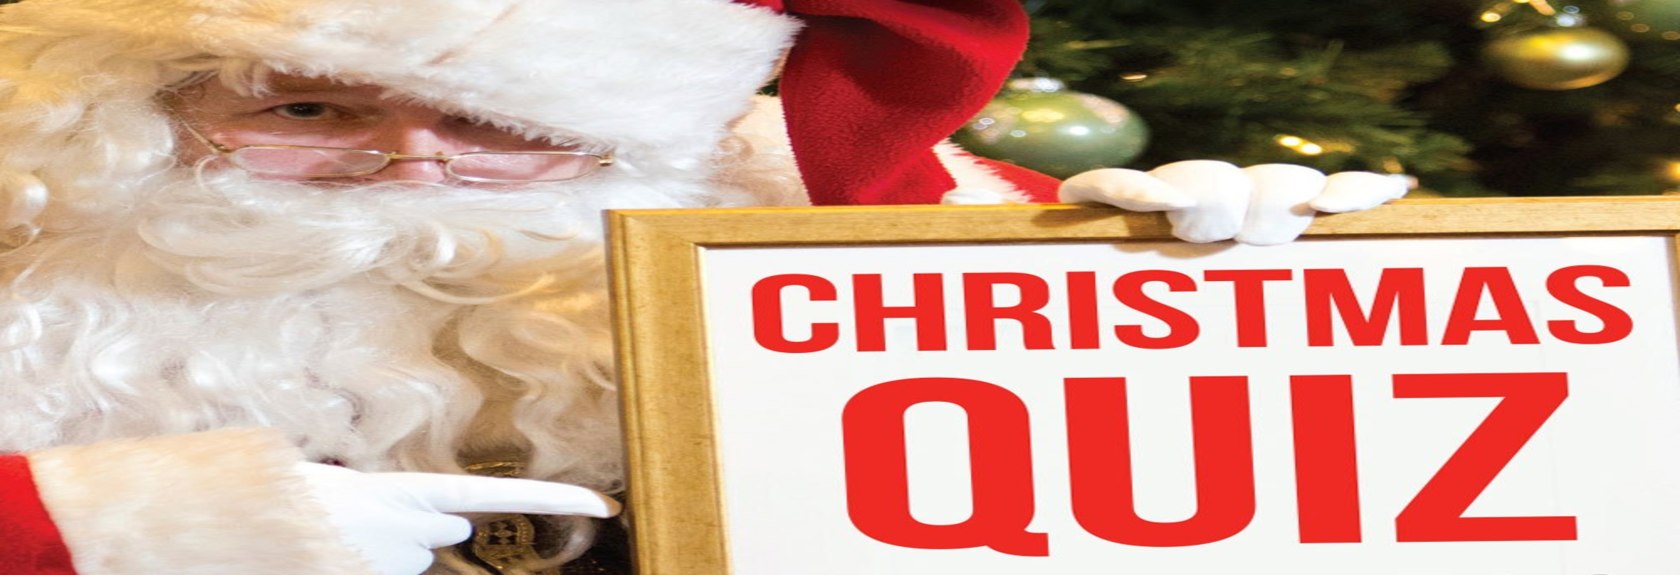 Você é um verdadeiro conhecedor de Natal? As 20 perguntas deste questionário de Natal colocarão à prova seus conhecimentos gerais sobre o Natal. Qual foi sua pontuação? 